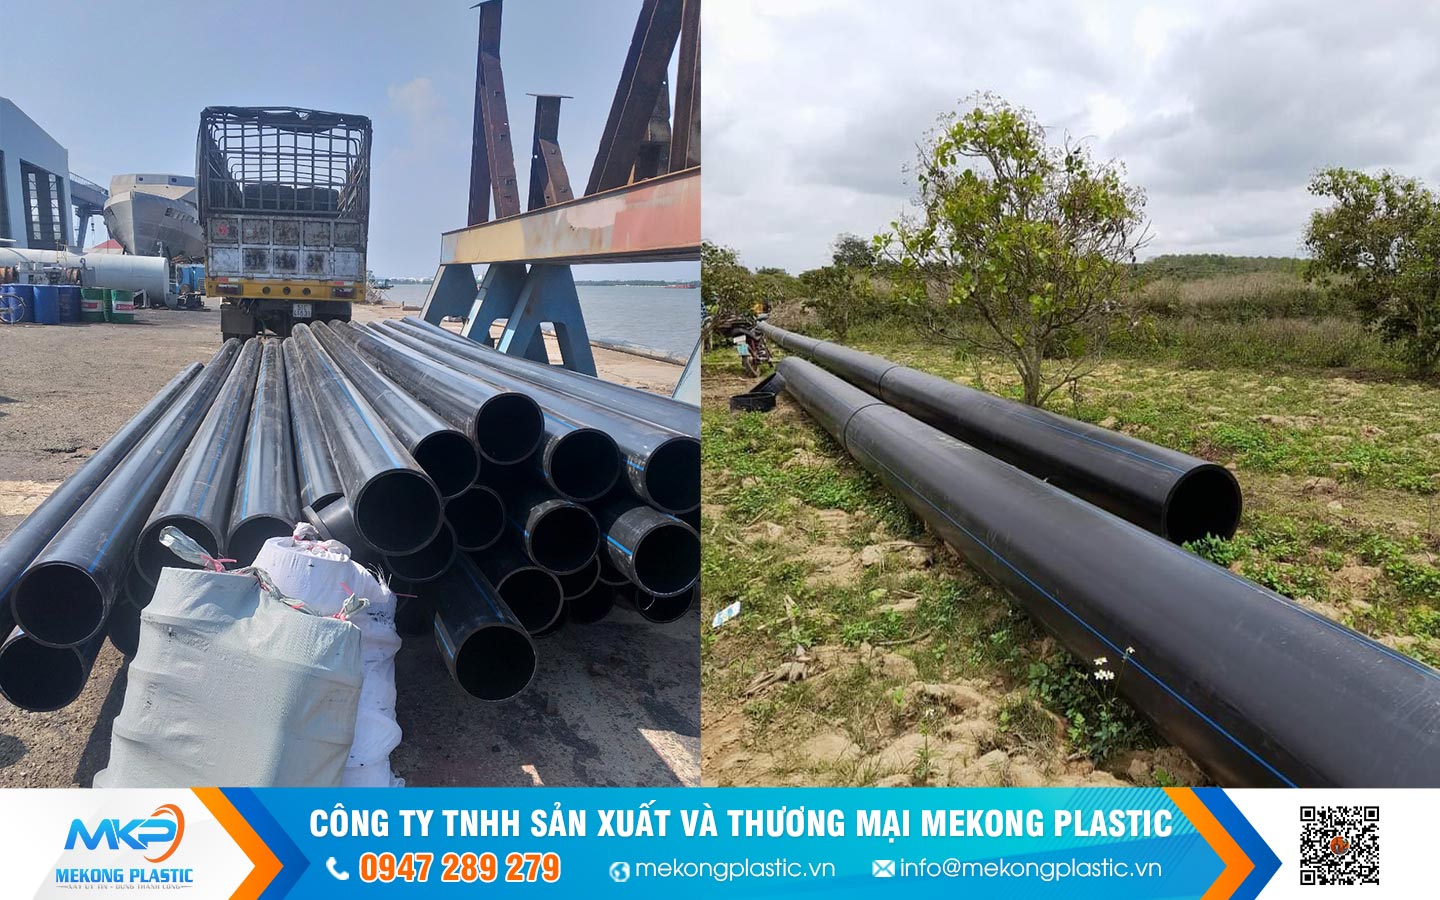 Ứng dụng ống nhựa HDPE: Hướng đi bền vững cho nuôi trồng thủy sản trên biển